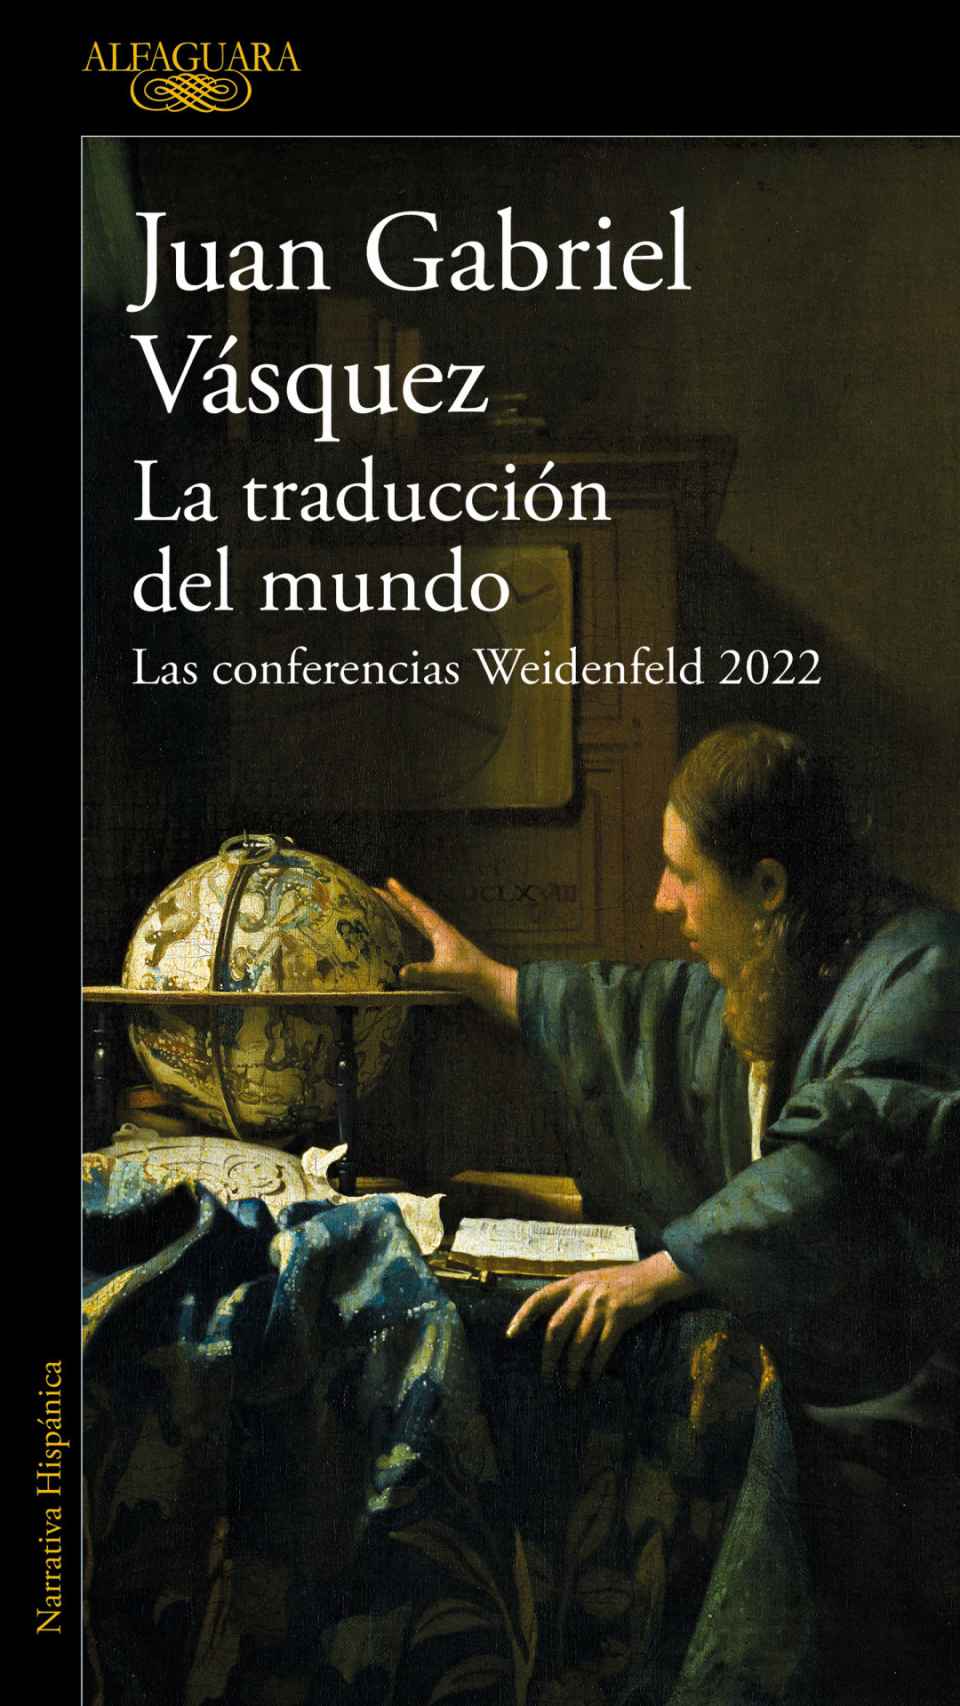 'La traducción del mundo', un libro de Juan Gabriel Vasquez